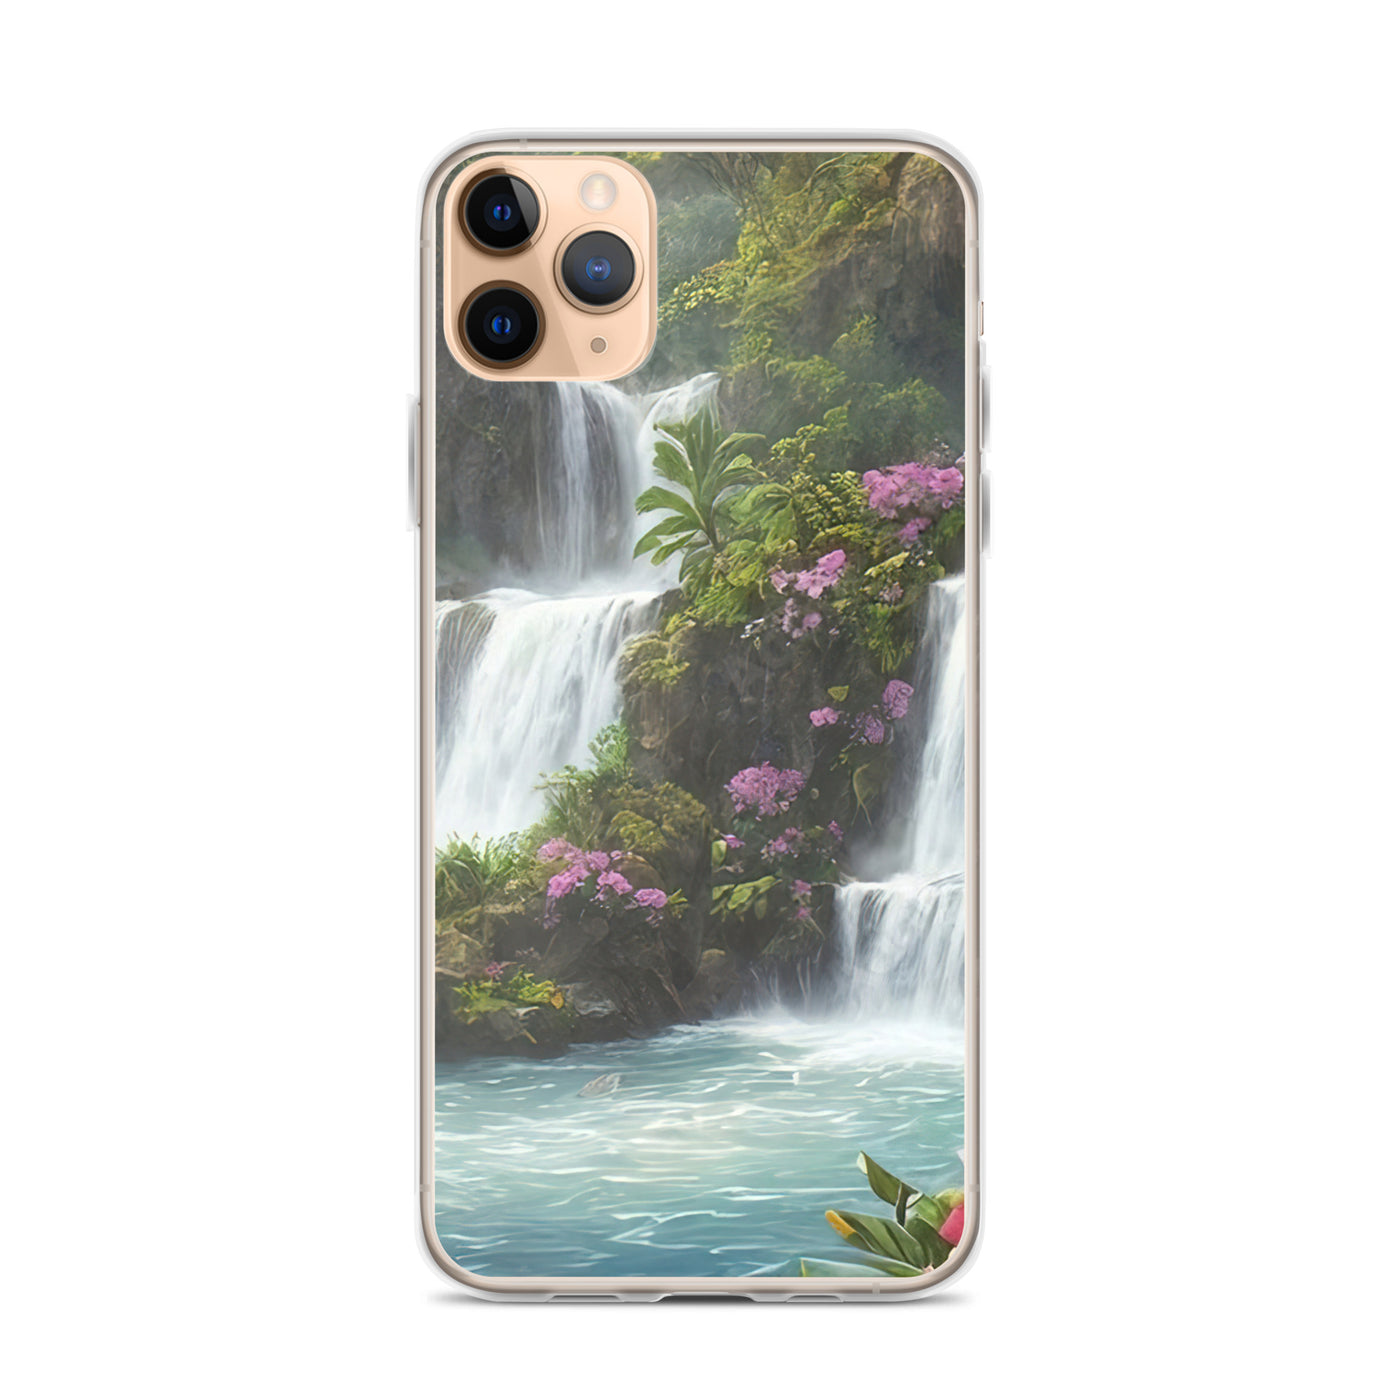 Wasserfall im Wald und Blumen - Schöne Malerei - iPhone Schutzhülle (durchsichtig) camping xxx iPhone 11 Pro Max